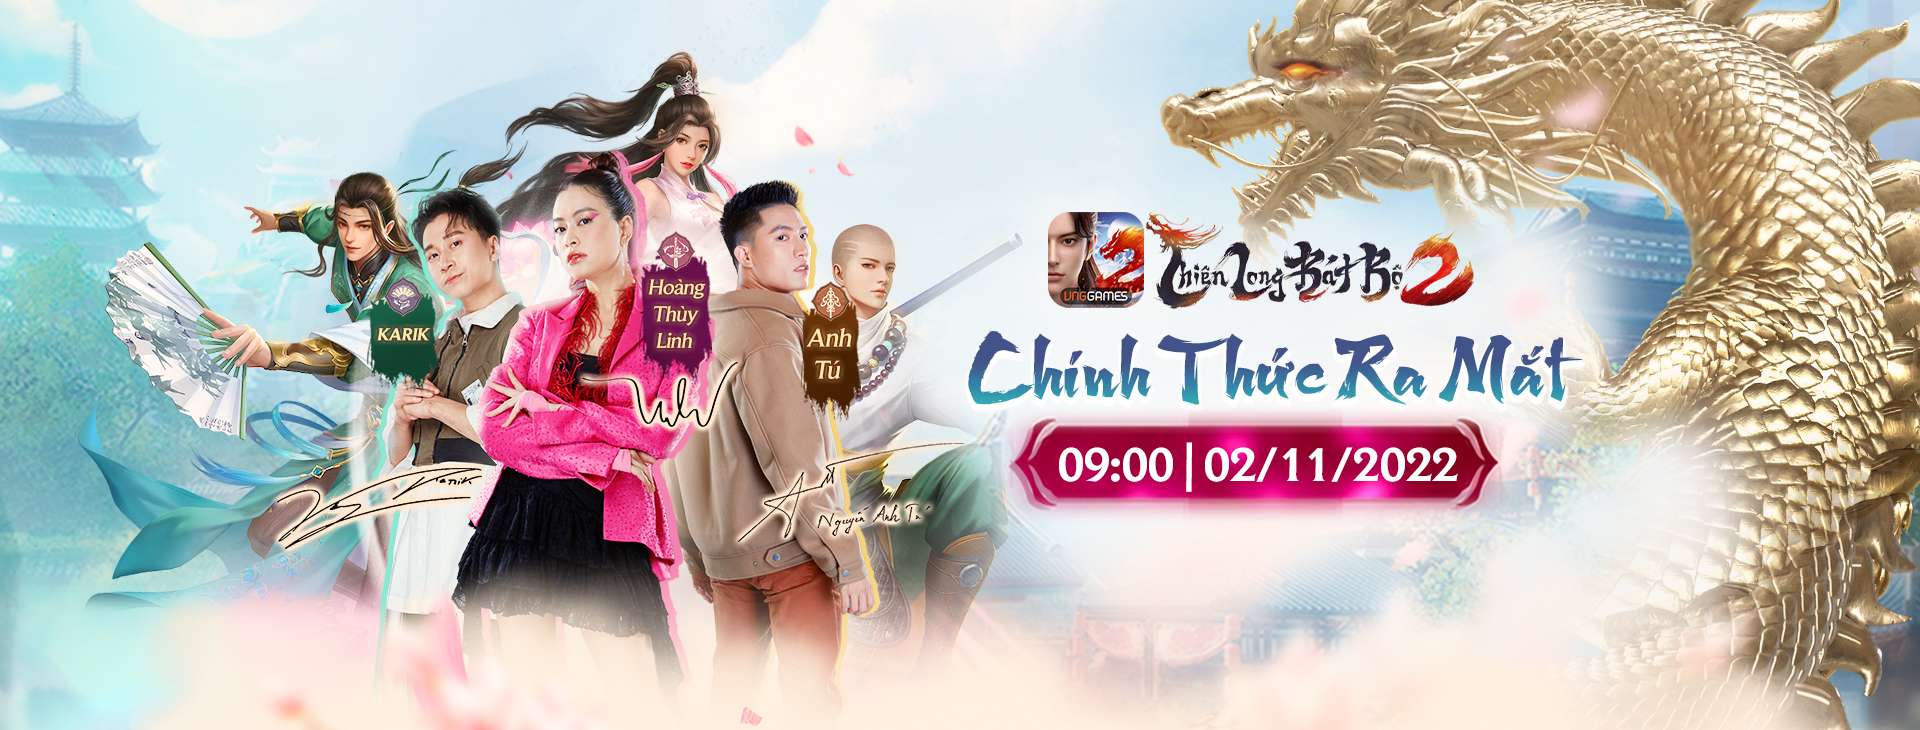 Thiên Long Bát Bộ 2 VNG chính thức ra mắt vào ngày 02/11 với nhiều sự kiện hấp dẫn